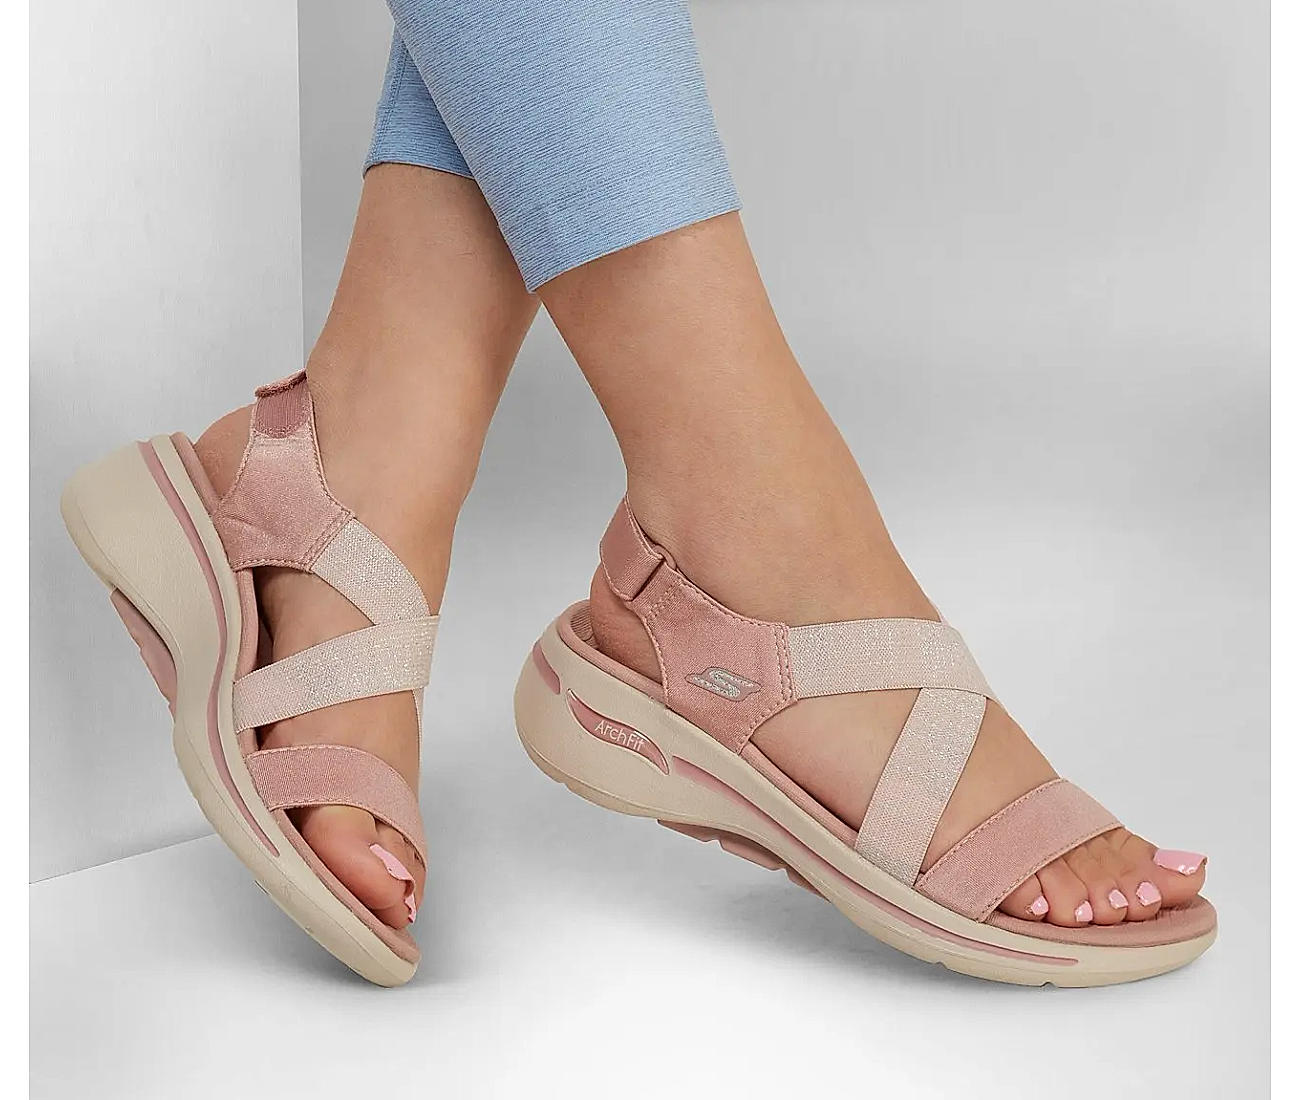 Undtagelse undertrykkeren Wardian sag Buy SKECHERS ROSE WOMENS GO WALK ARCH FIT SANDAL - AST Online at Regal  Shoes | 8696719